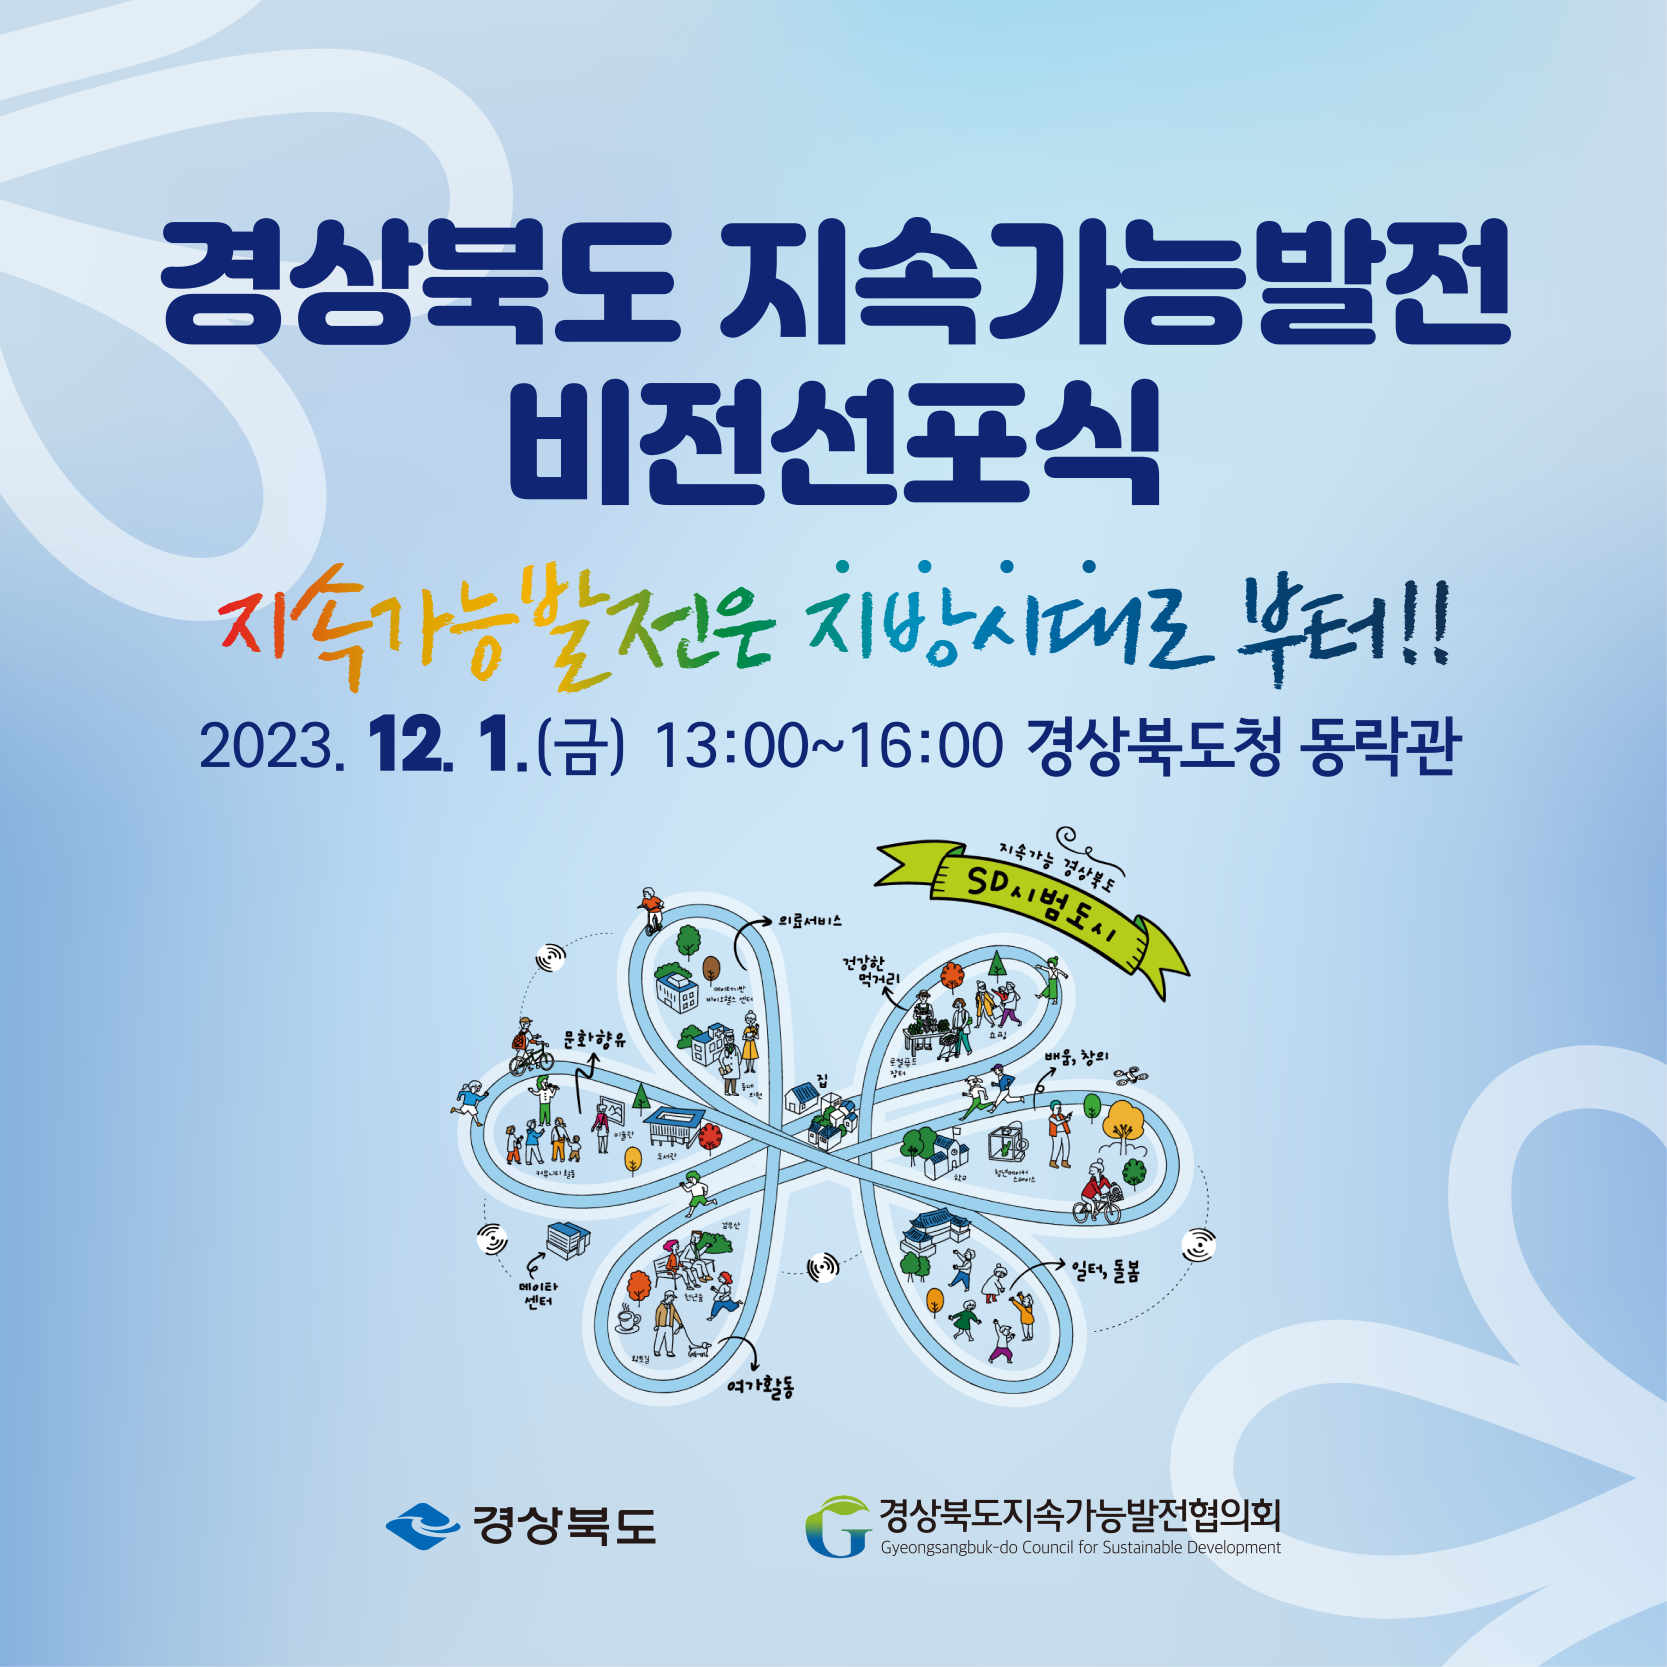 경상북도 지속가능발전 비전선포식 개최